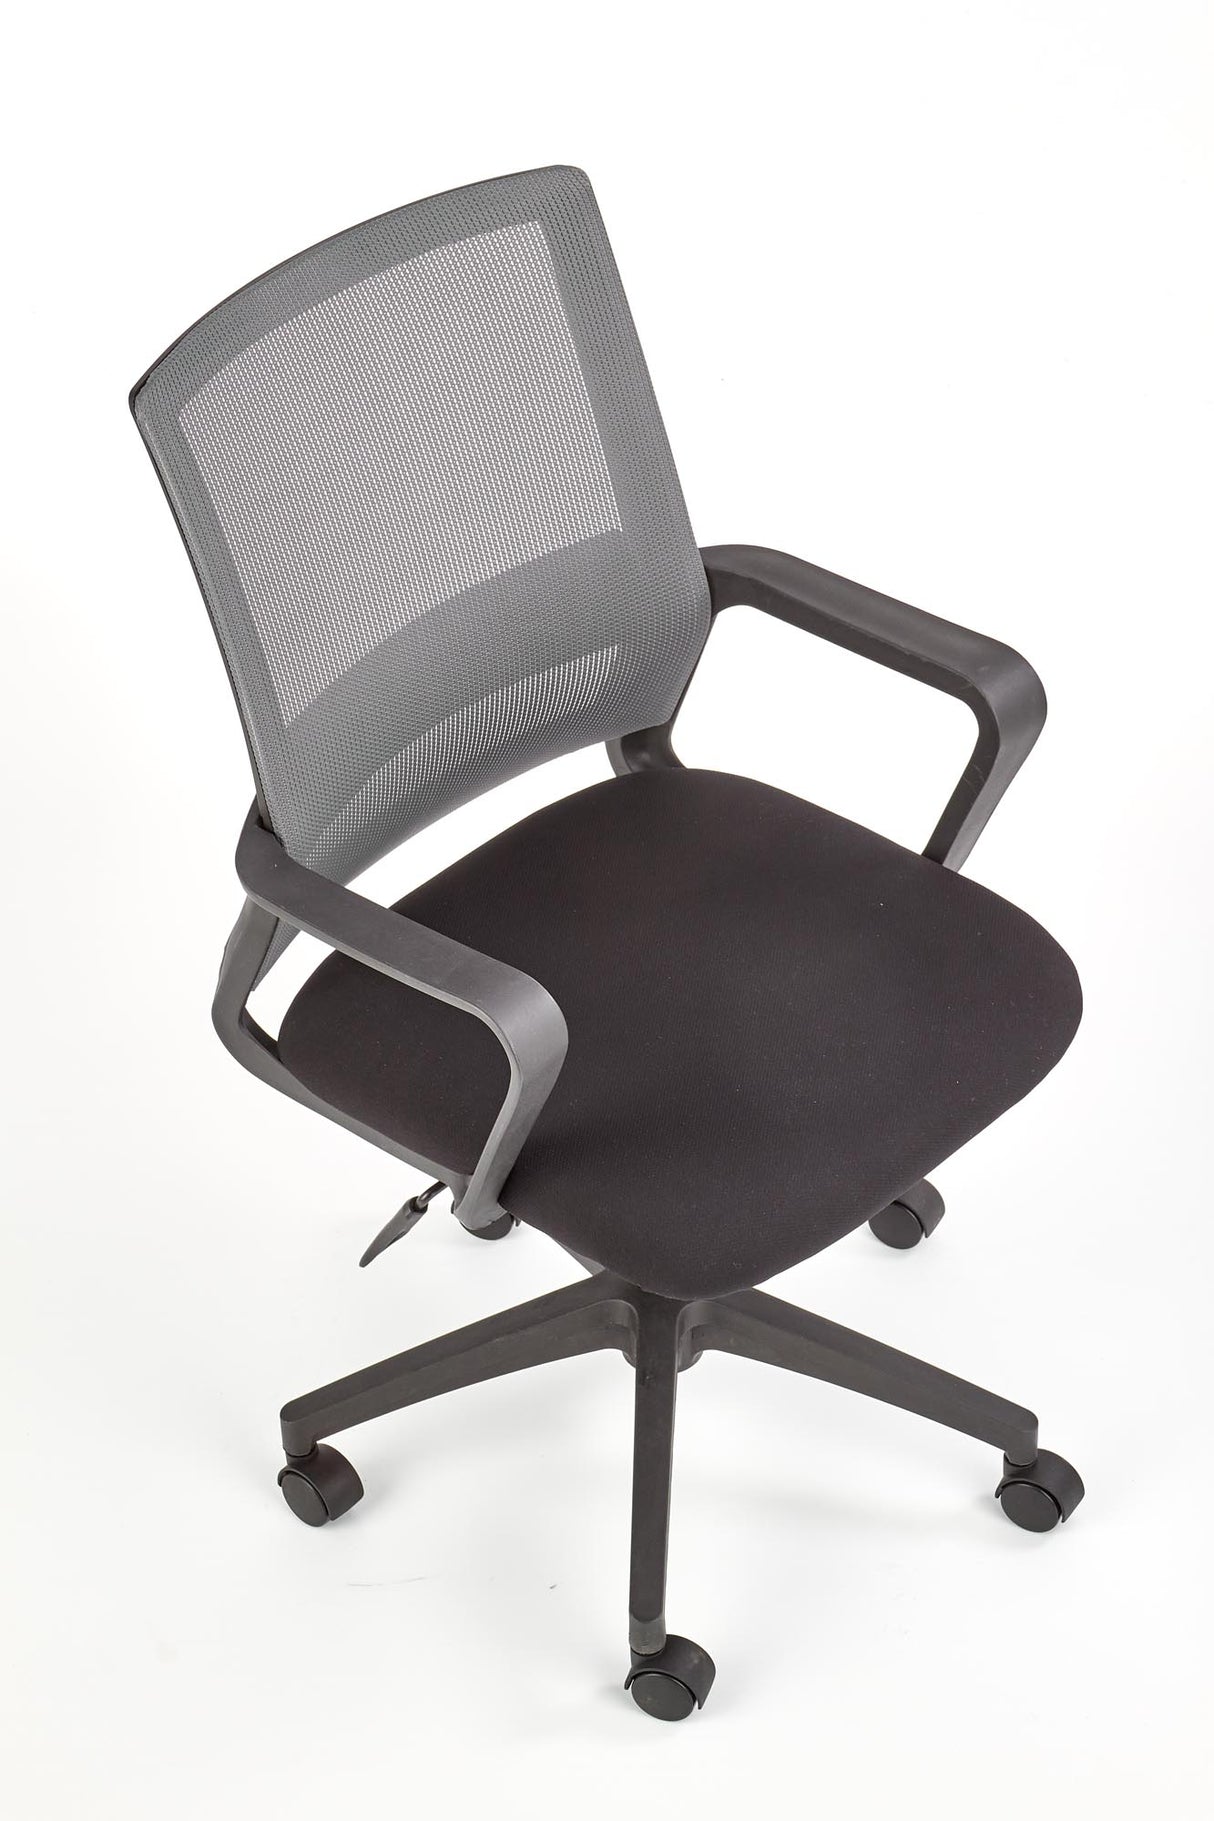 Office Chair HA1385